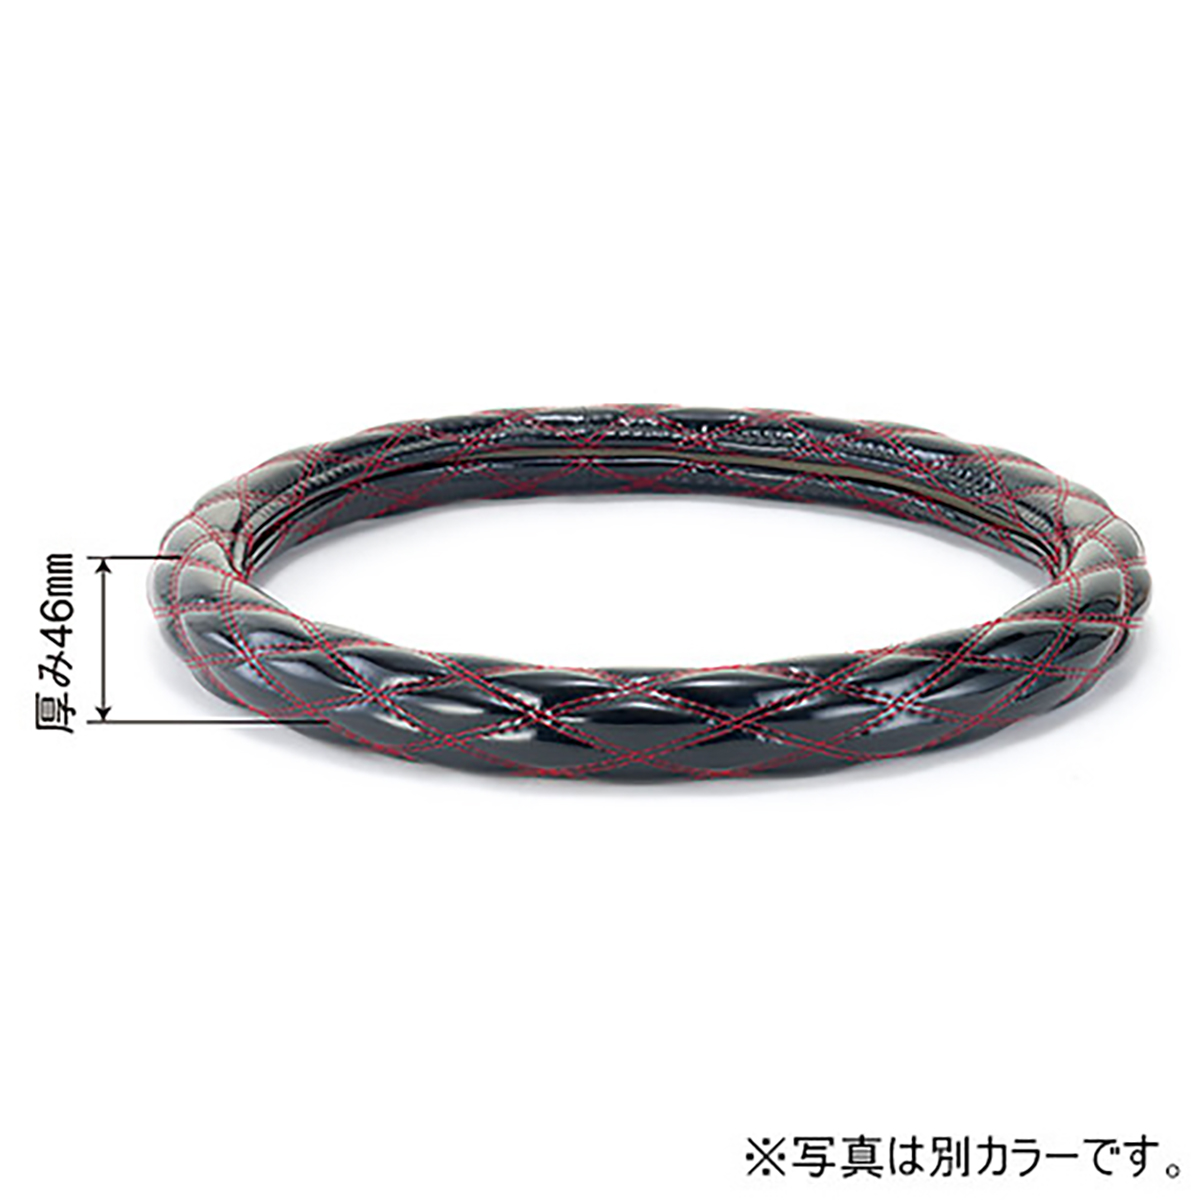 ハンドルカバー ハンドル外径41cm 黒/赤糸